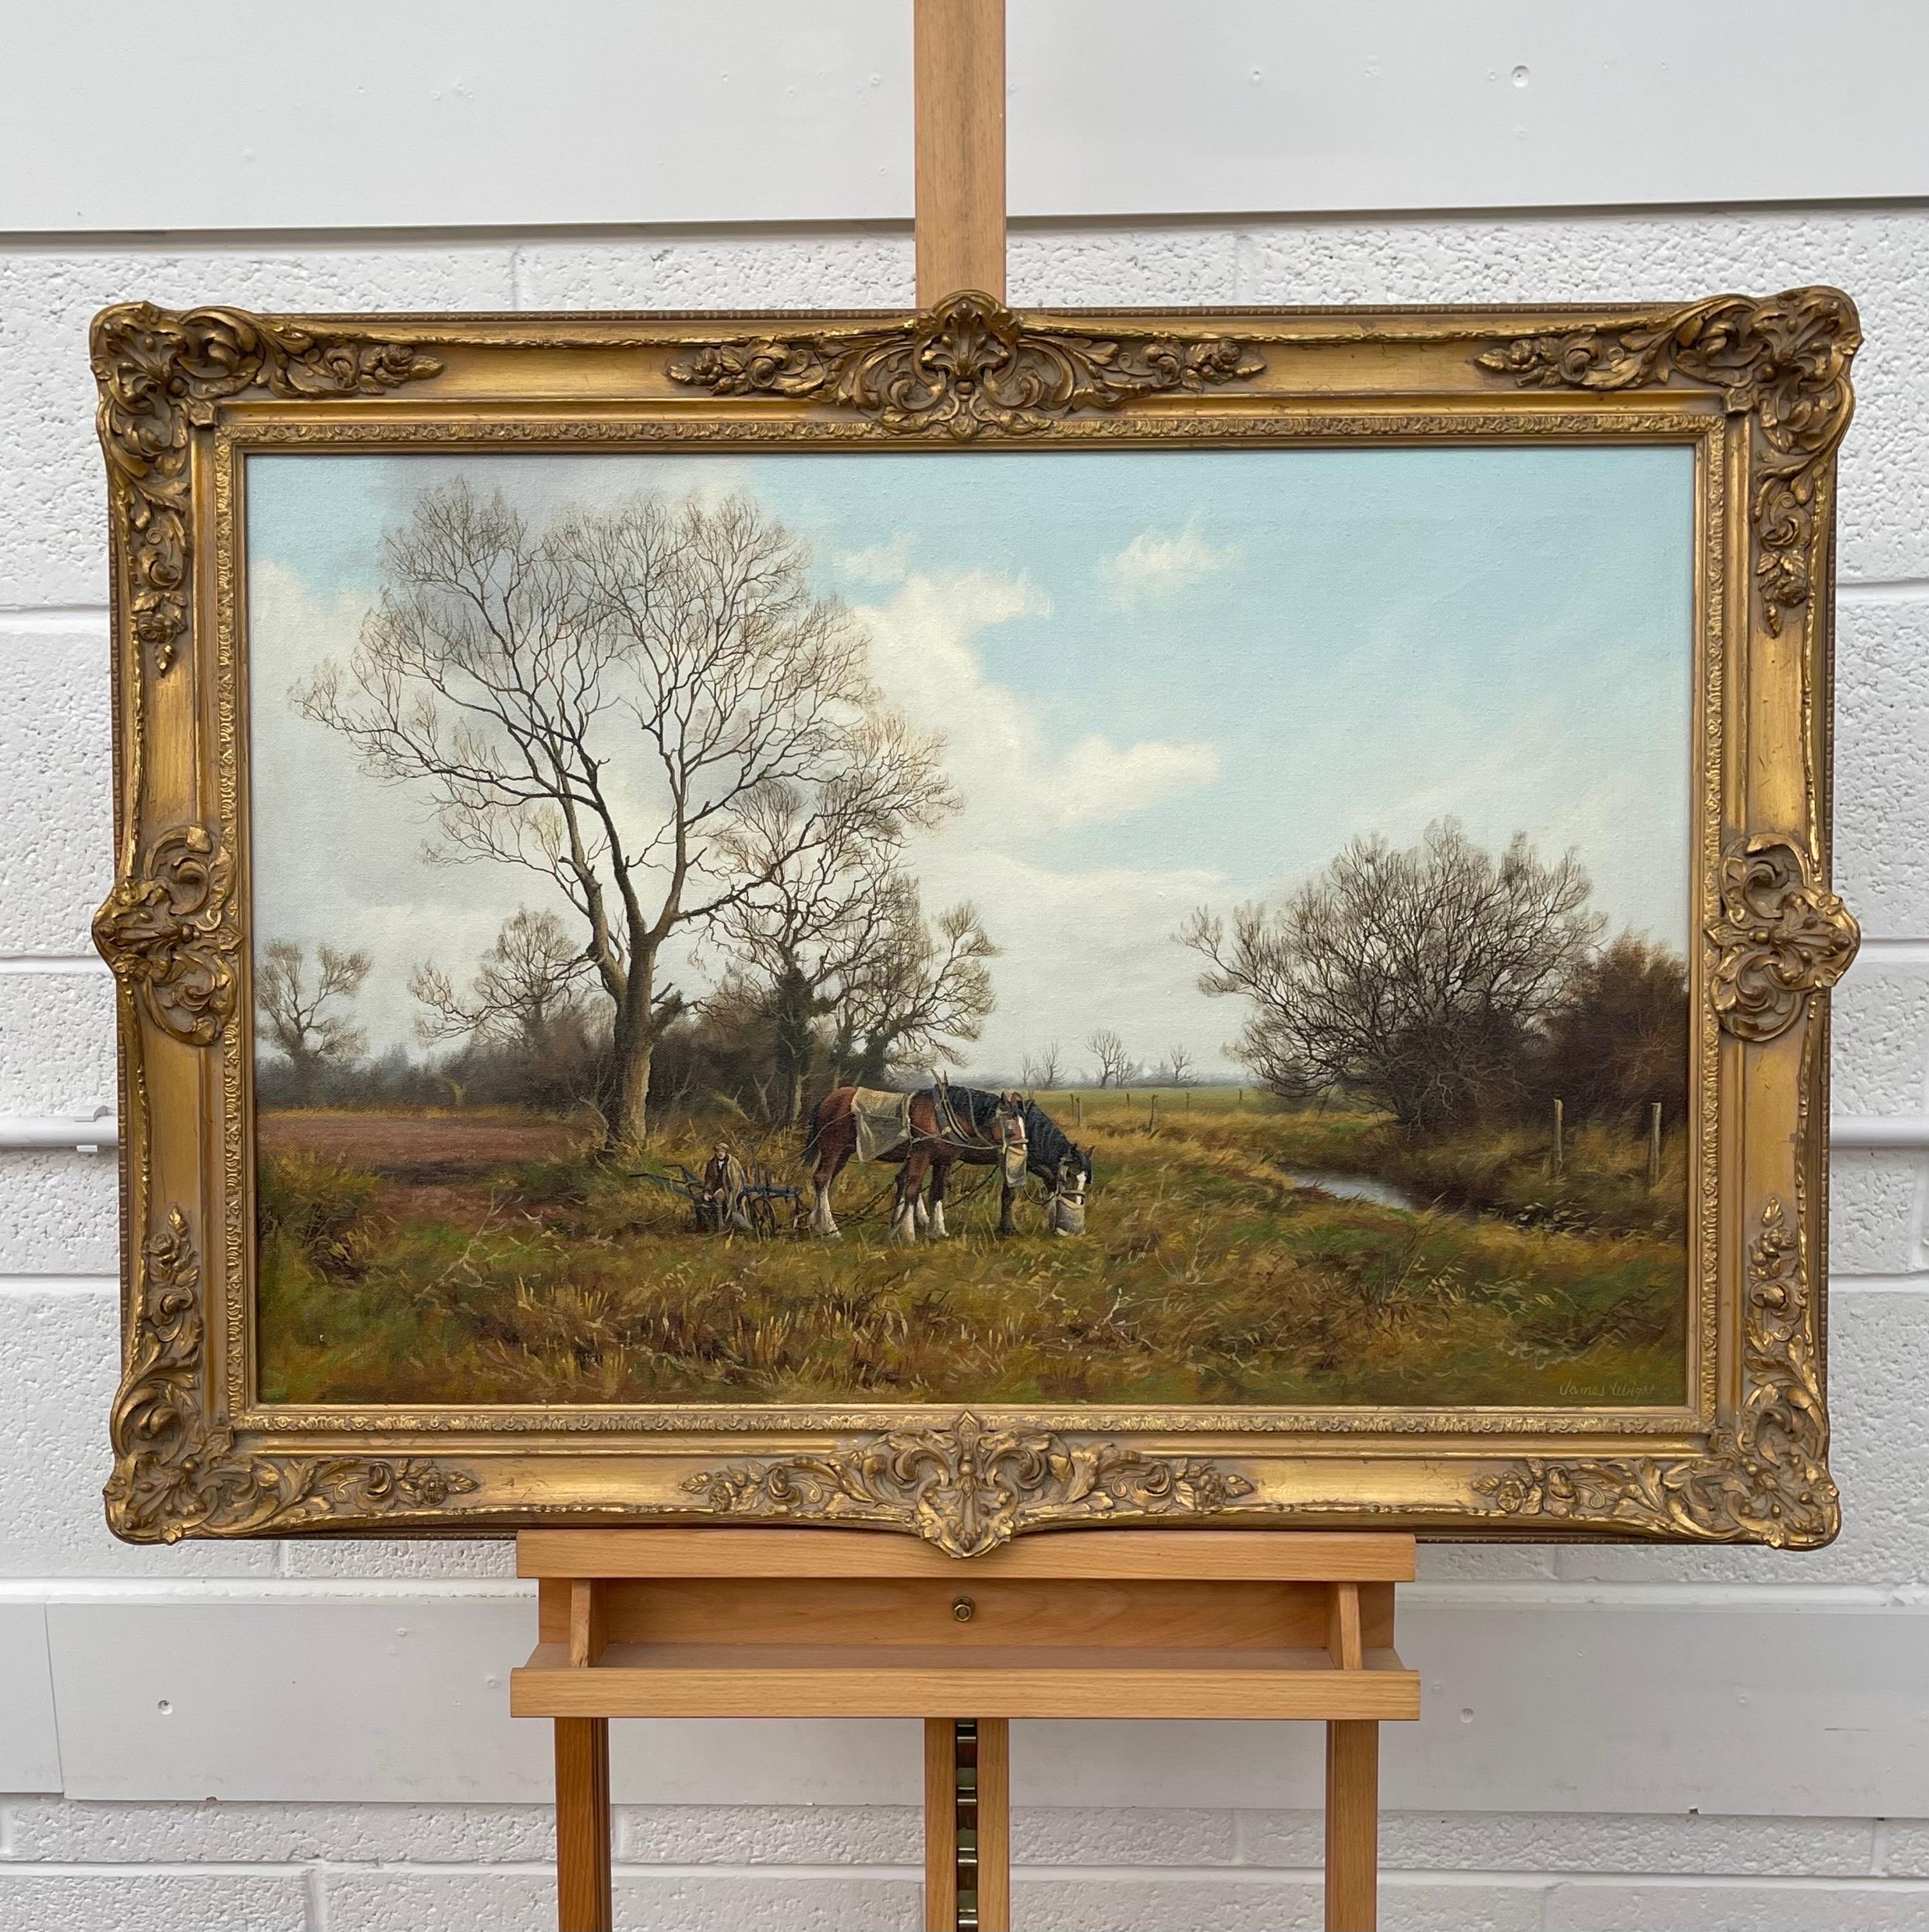 Peinture de la campagne anglaise avec chevaux et charrue par un artiste Modern British - Réalisme Painting par James Wright